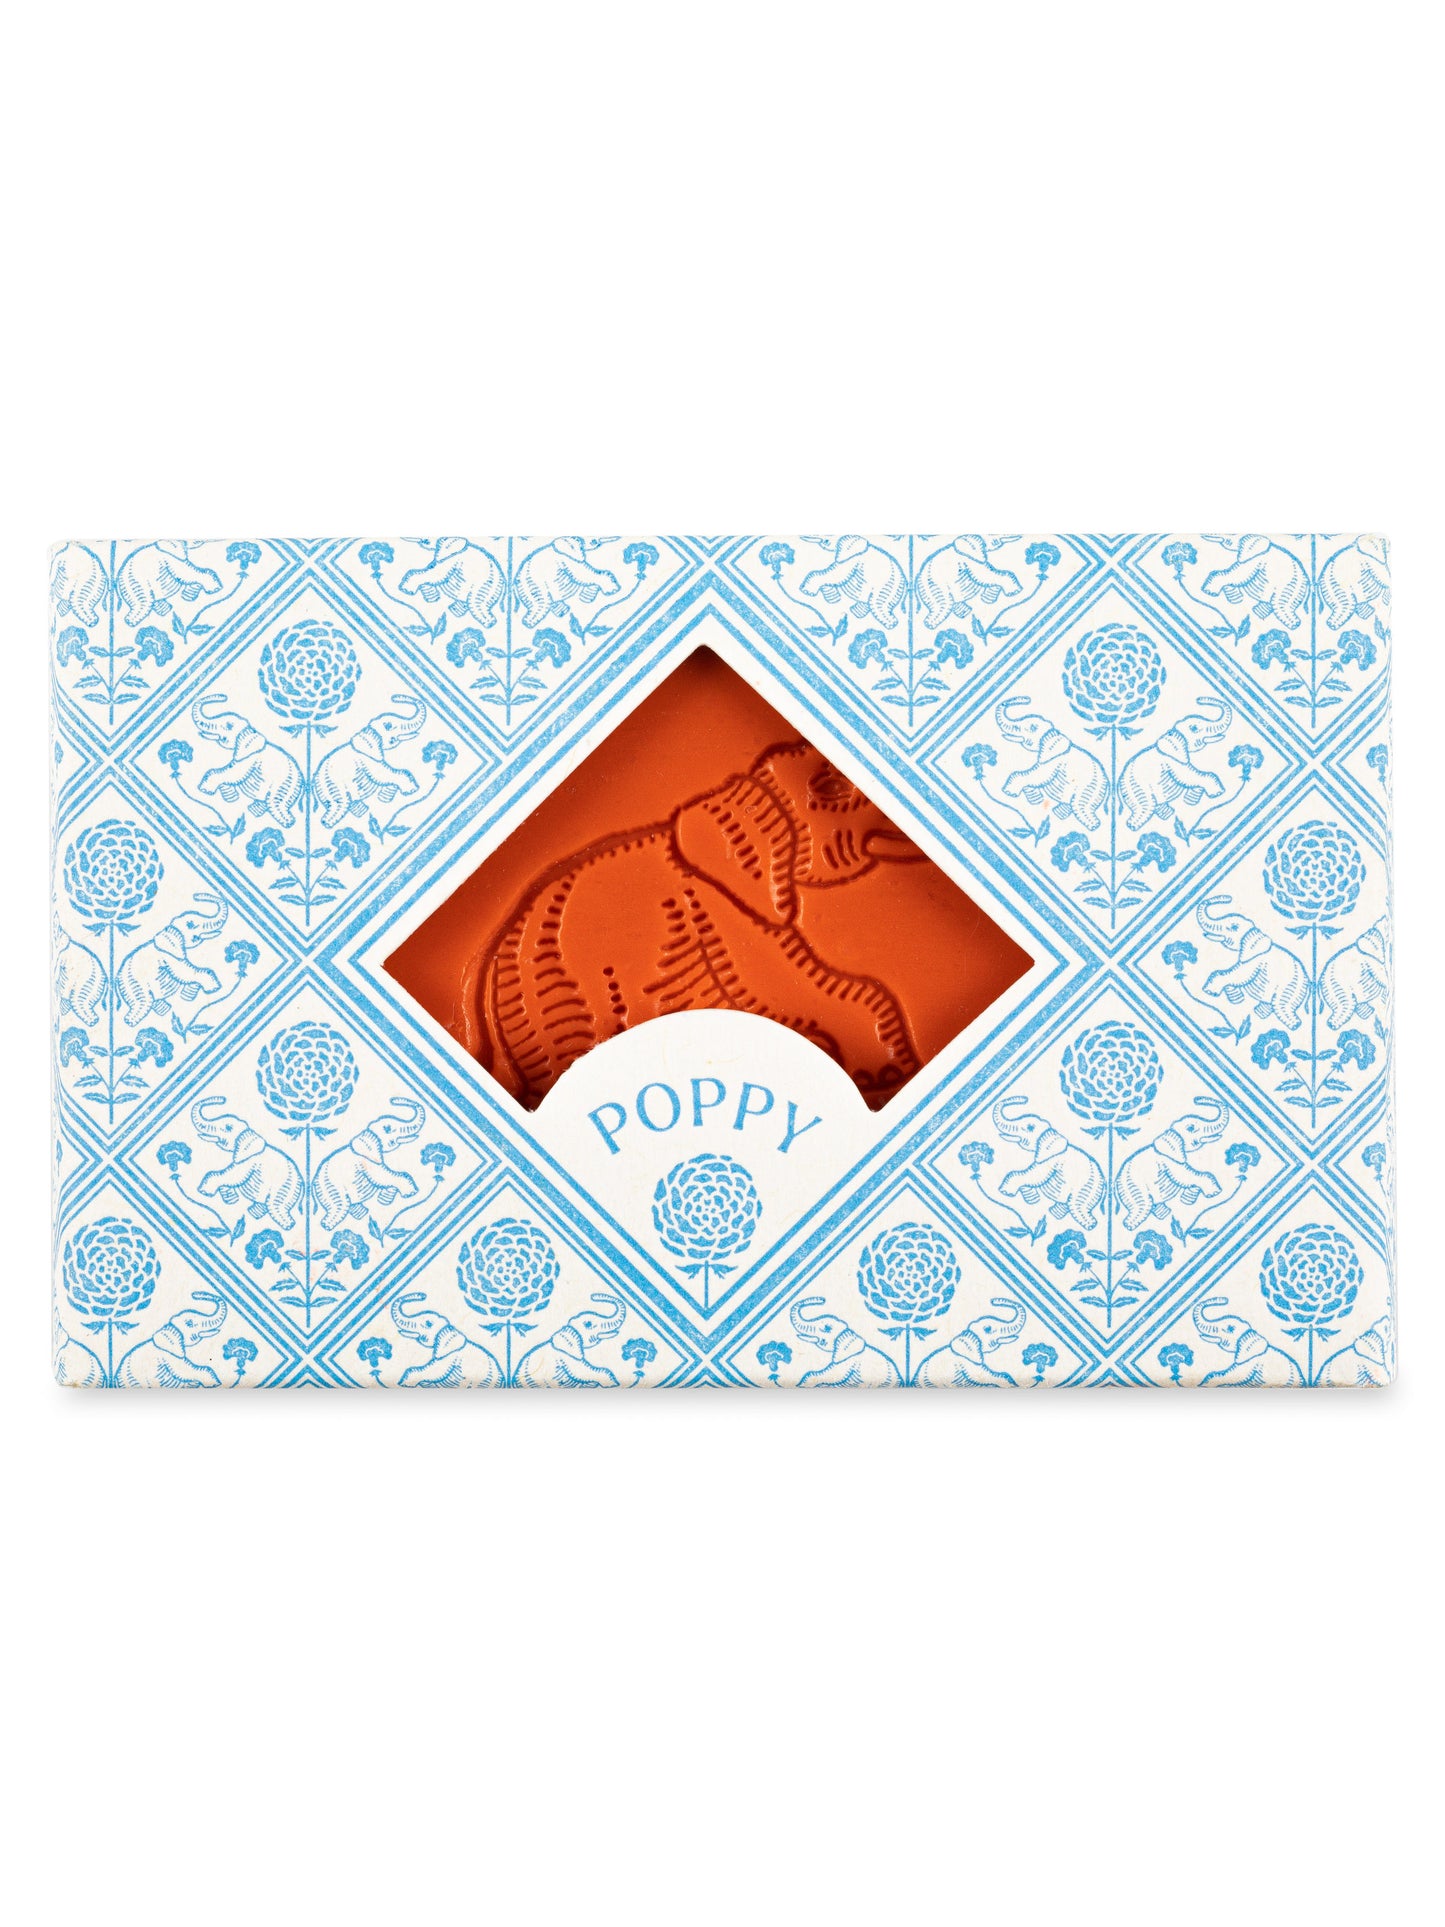 L'éléphant Poppy Soap